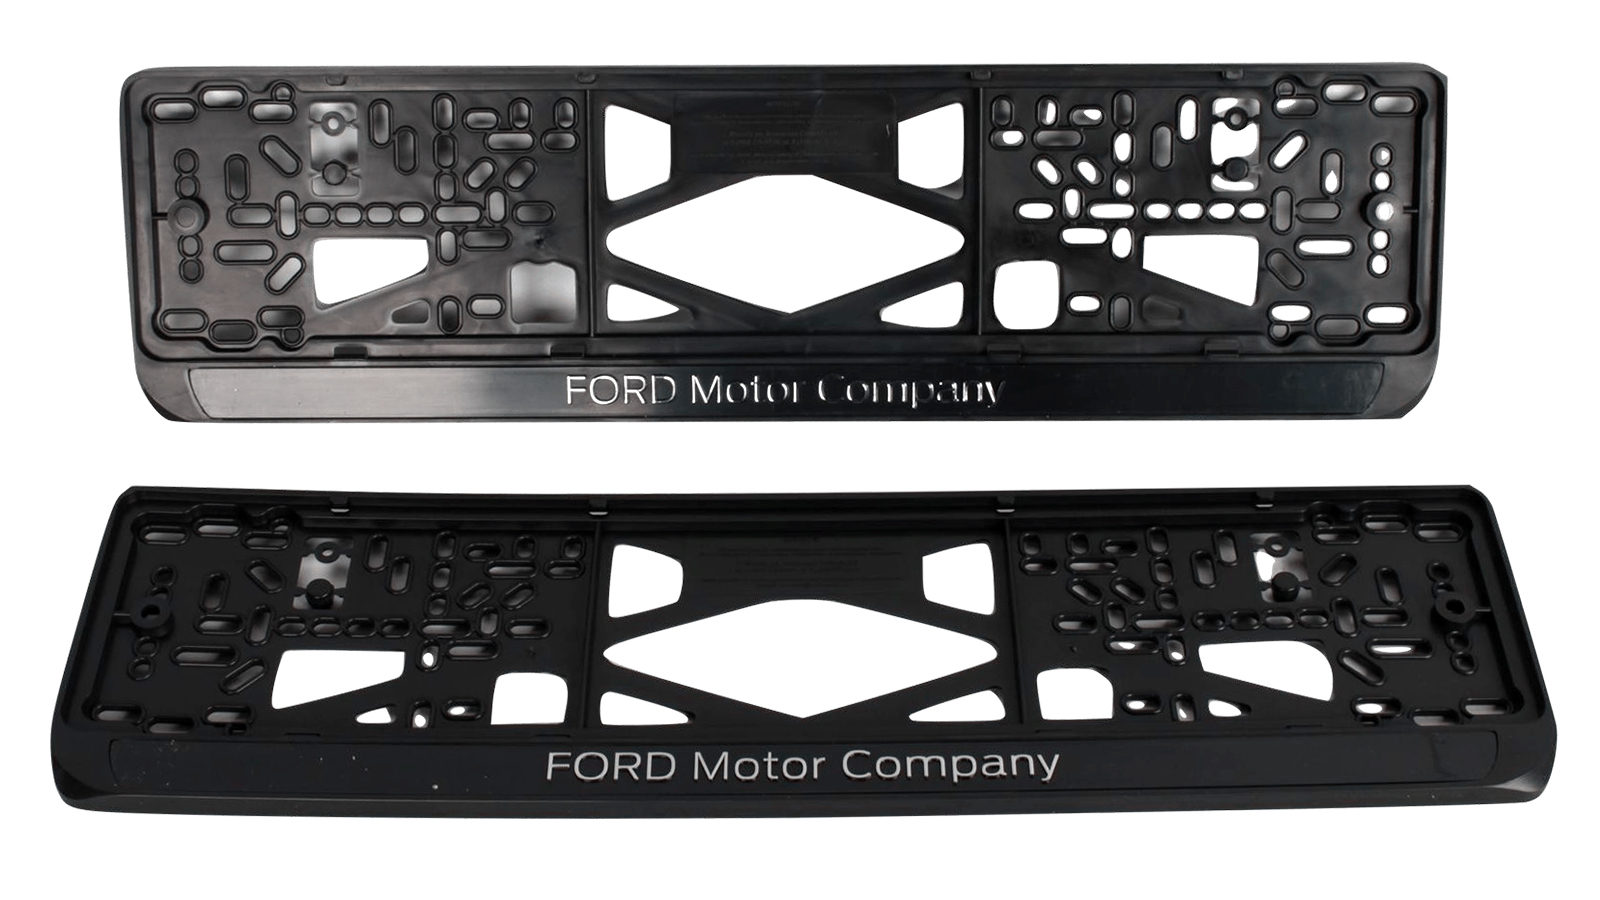 Рамка знака номерного объемная Ford Motor Comp комплект 2 штуки фотография №1